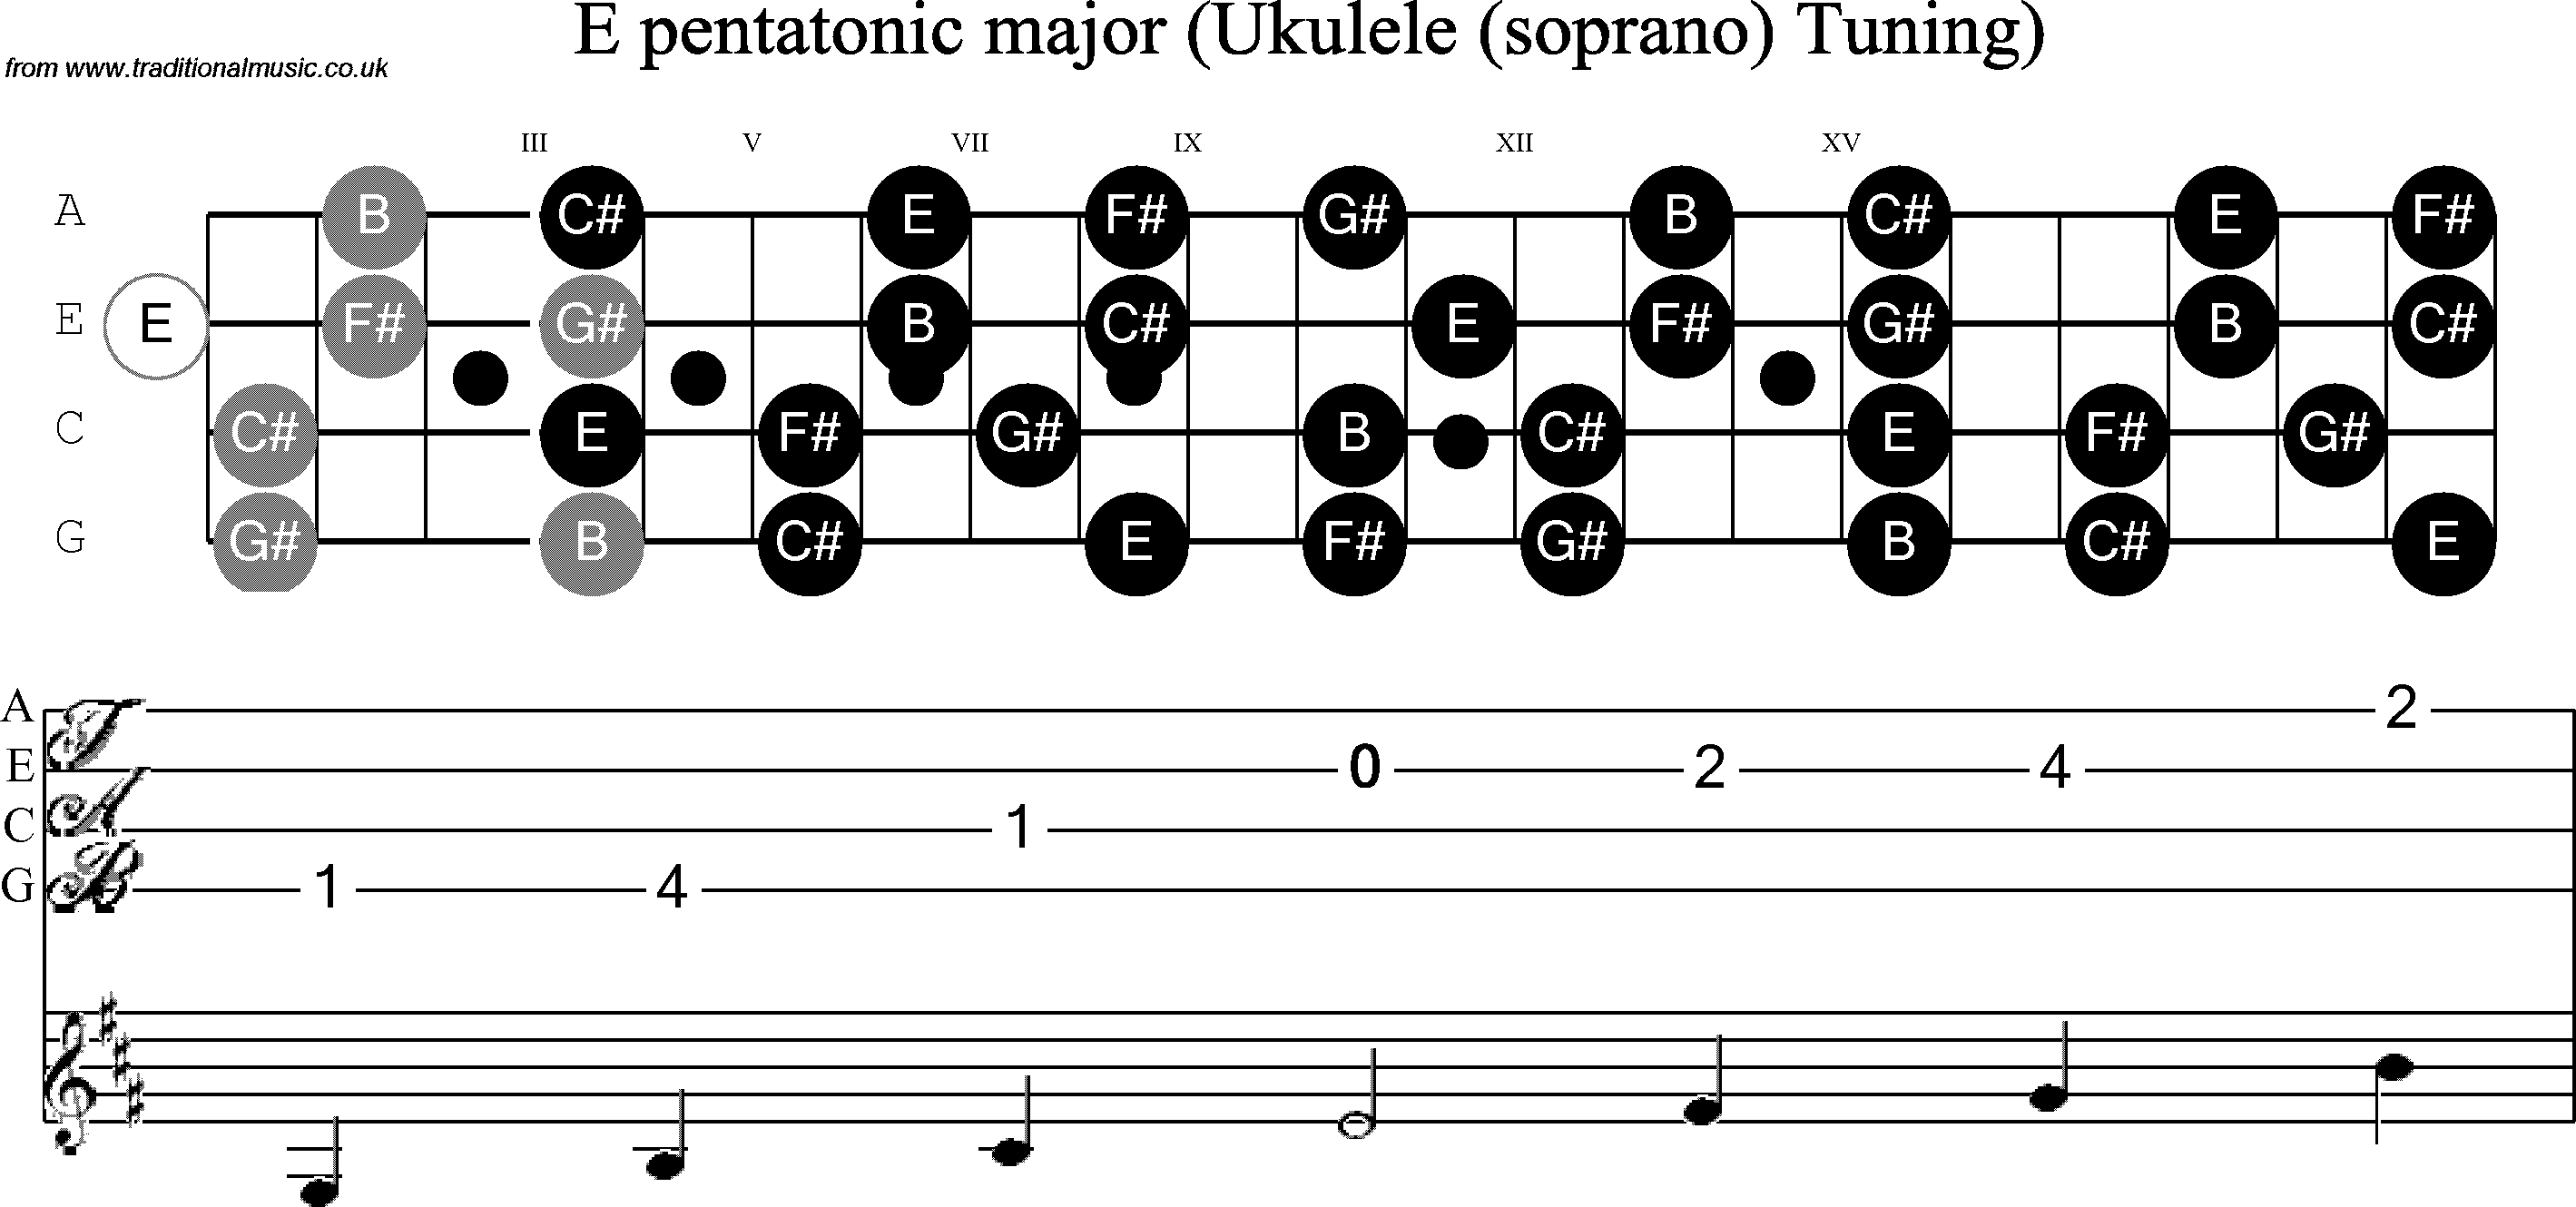 Scale, stave and neck diagram for Ukulele E Pentatonic